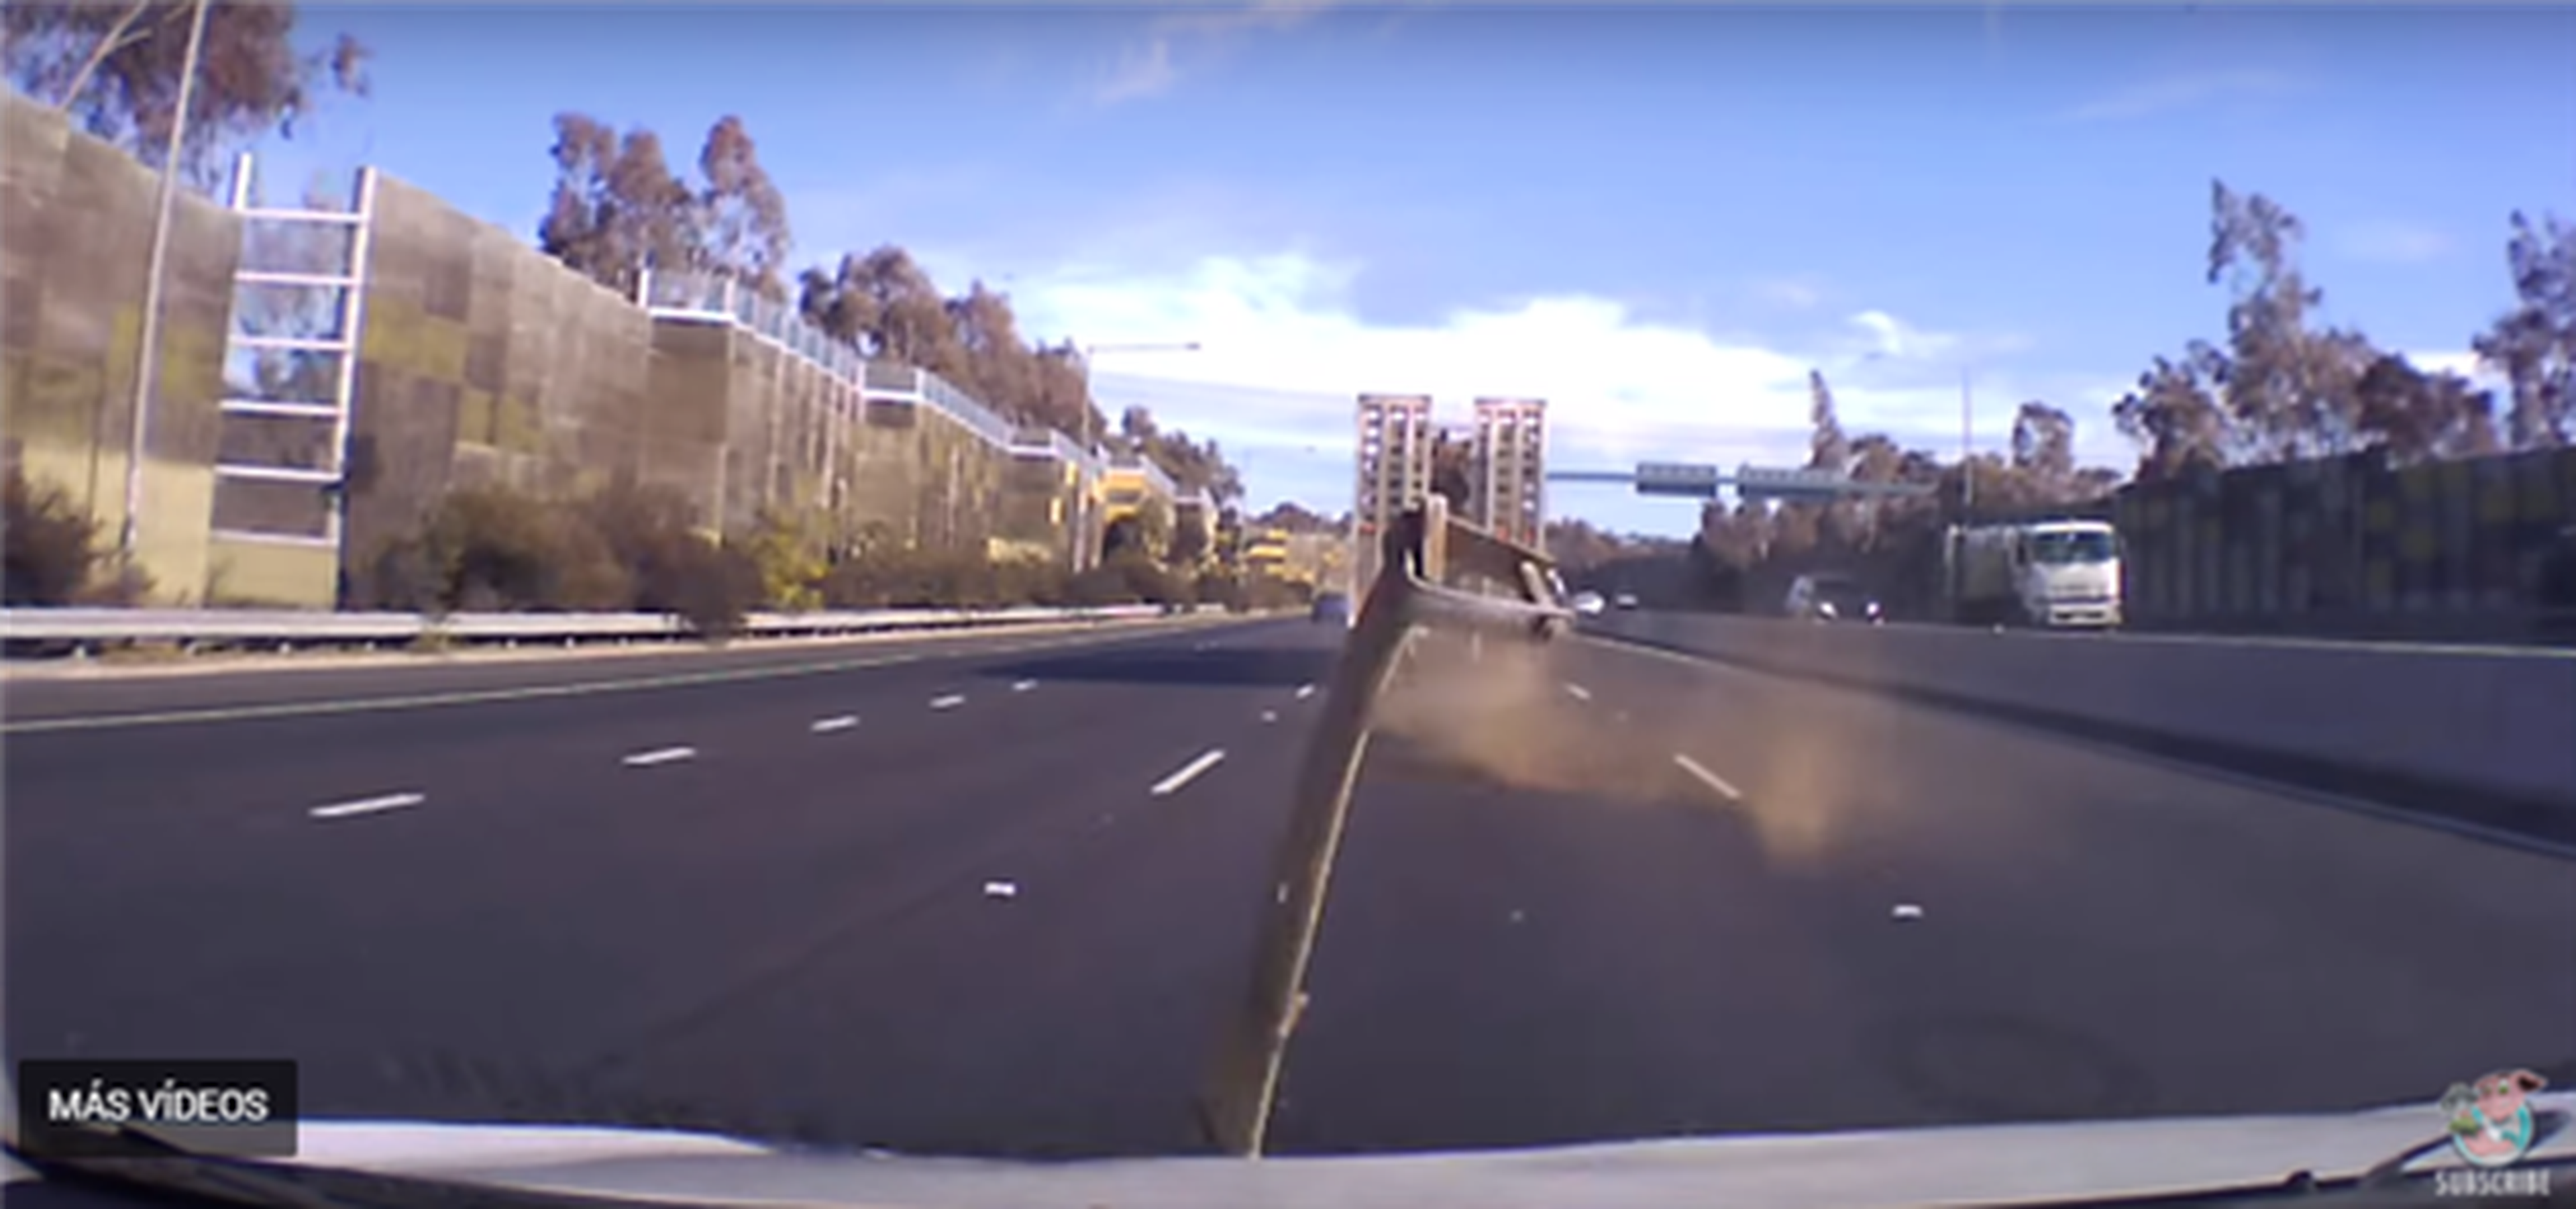 VÍDEO: Un trozo de metal se estampa contra el parabrisas de un coche en marcha